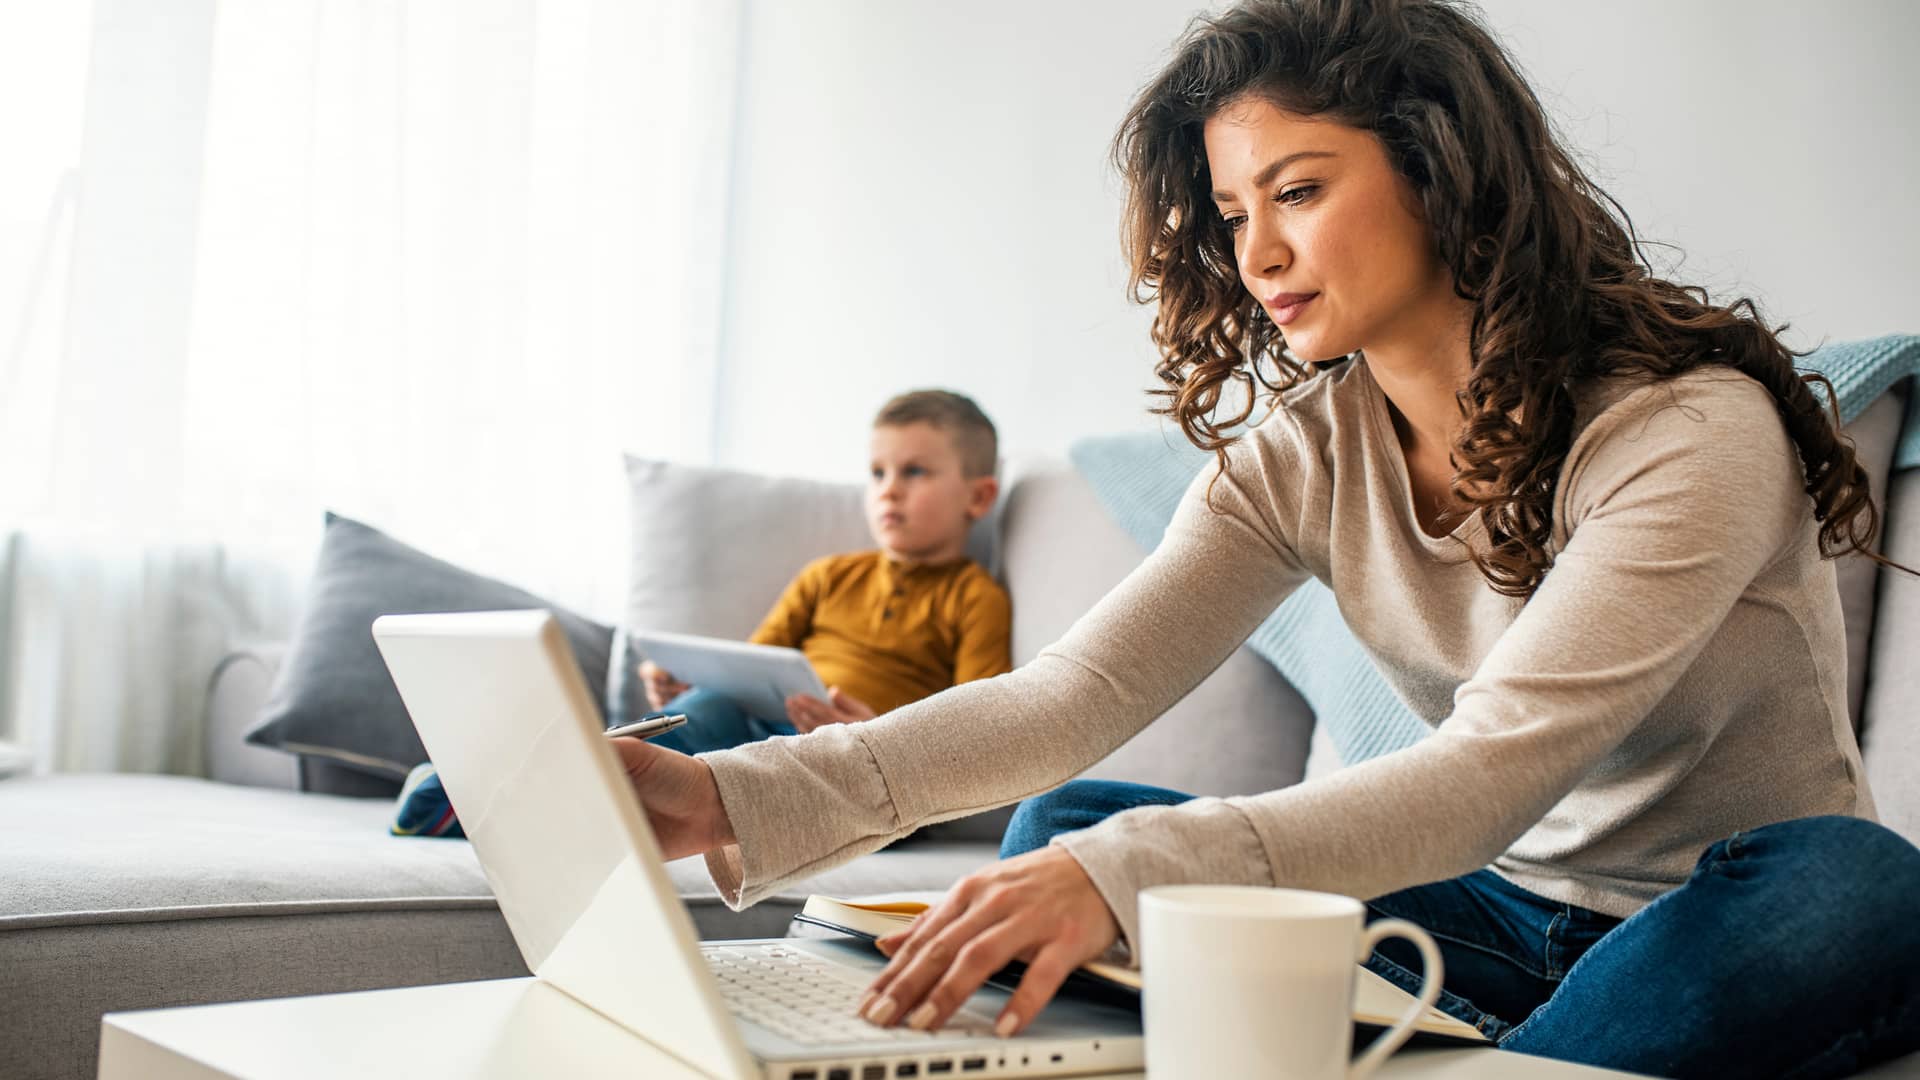 madre e hijo en el sofa de casa utilizando dispositivos electronicos grcas a las nuevas tarifa de internet y movil de cablemovil